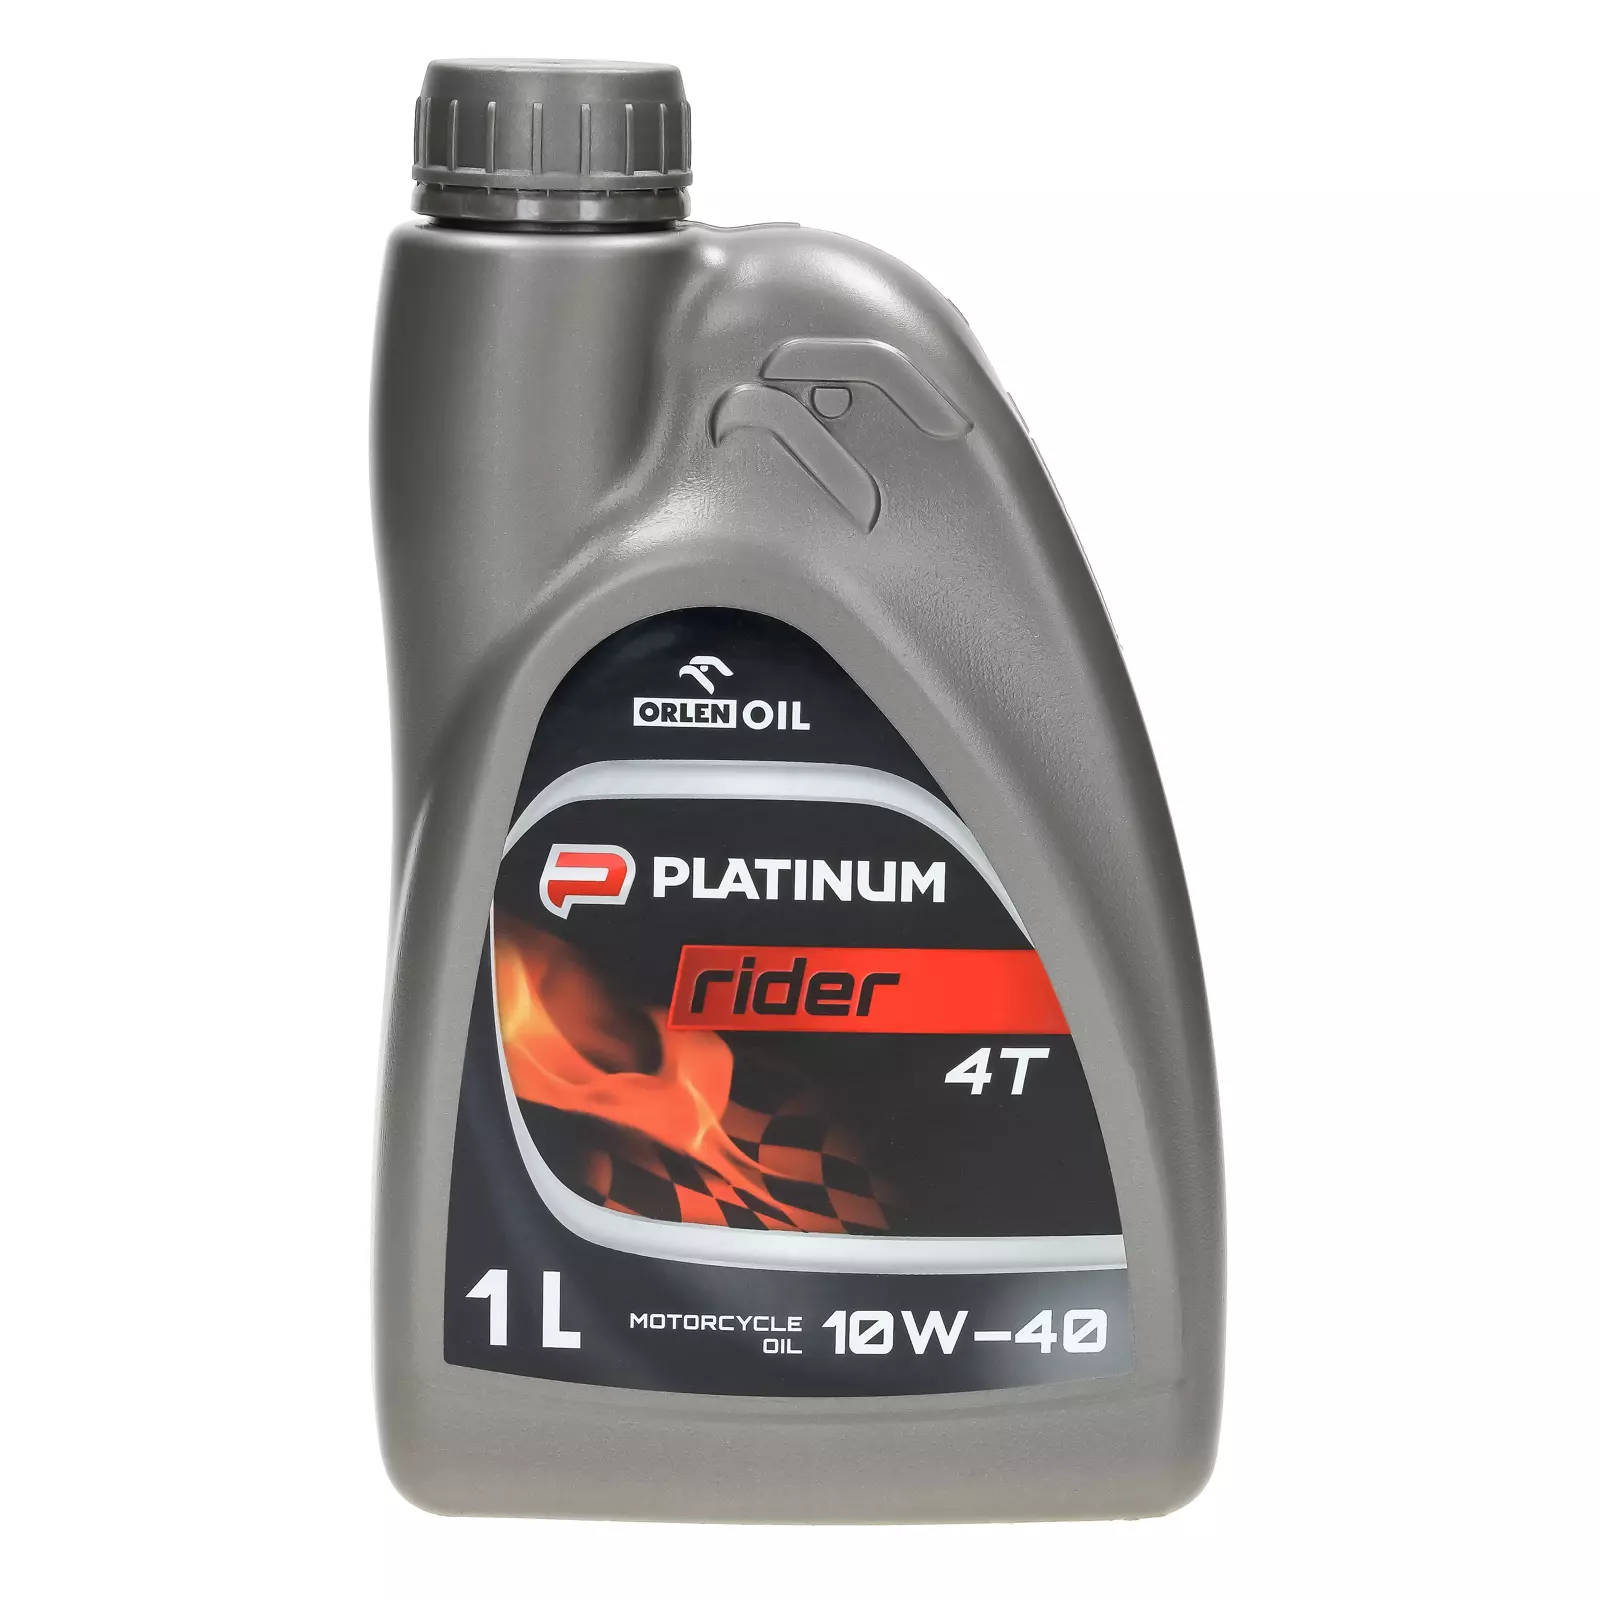 Orlen Oil Platinum Rider 4T 10W-40 - моторное масло 1л